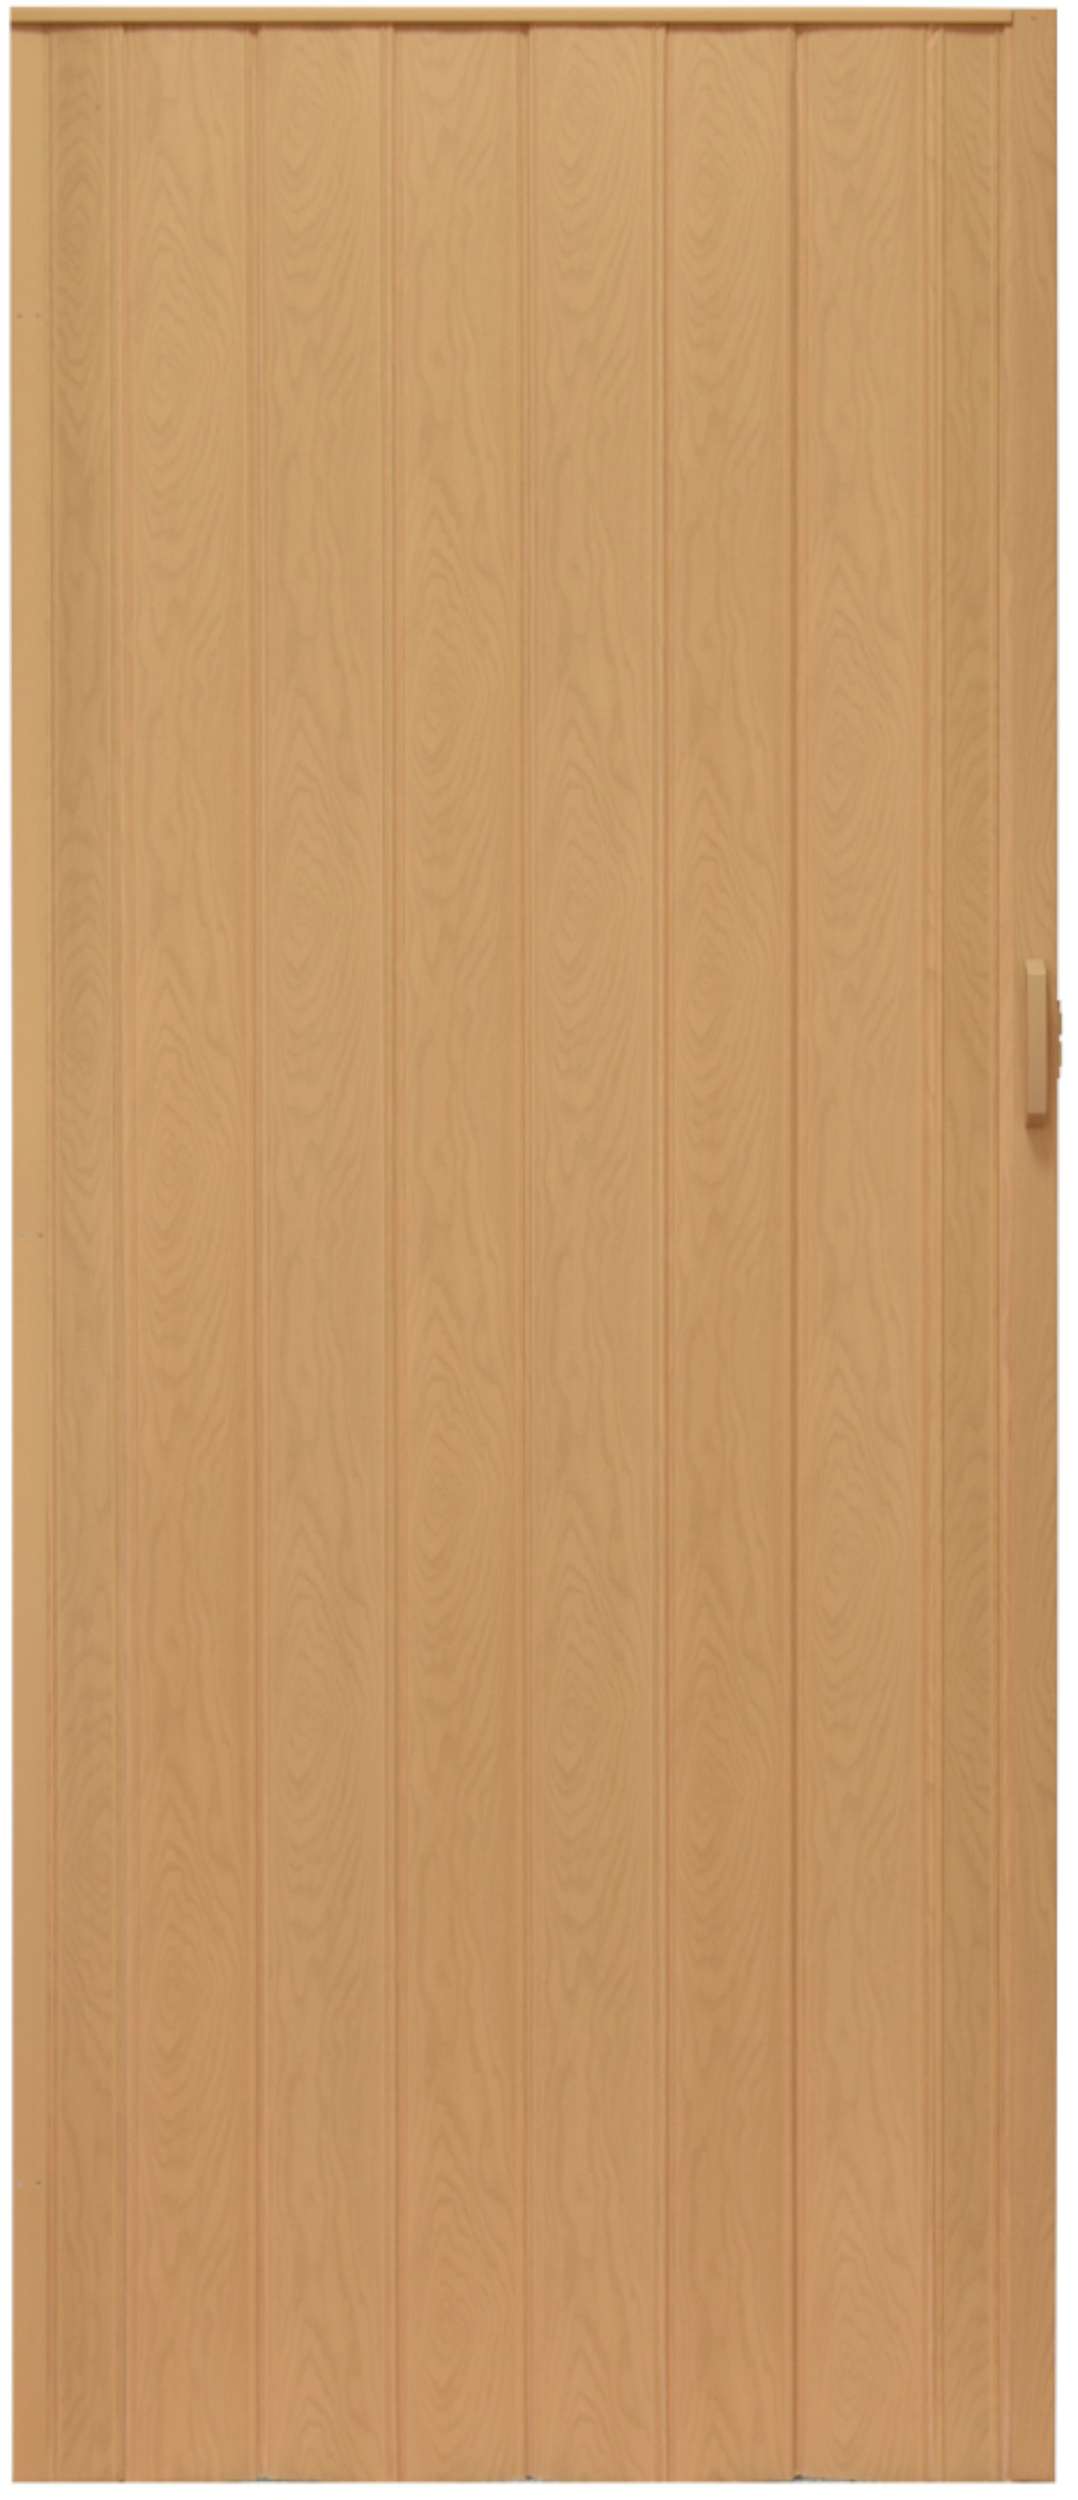 Drzwi harmonijkowe 004 - 90 cm - 02 jasny dąb